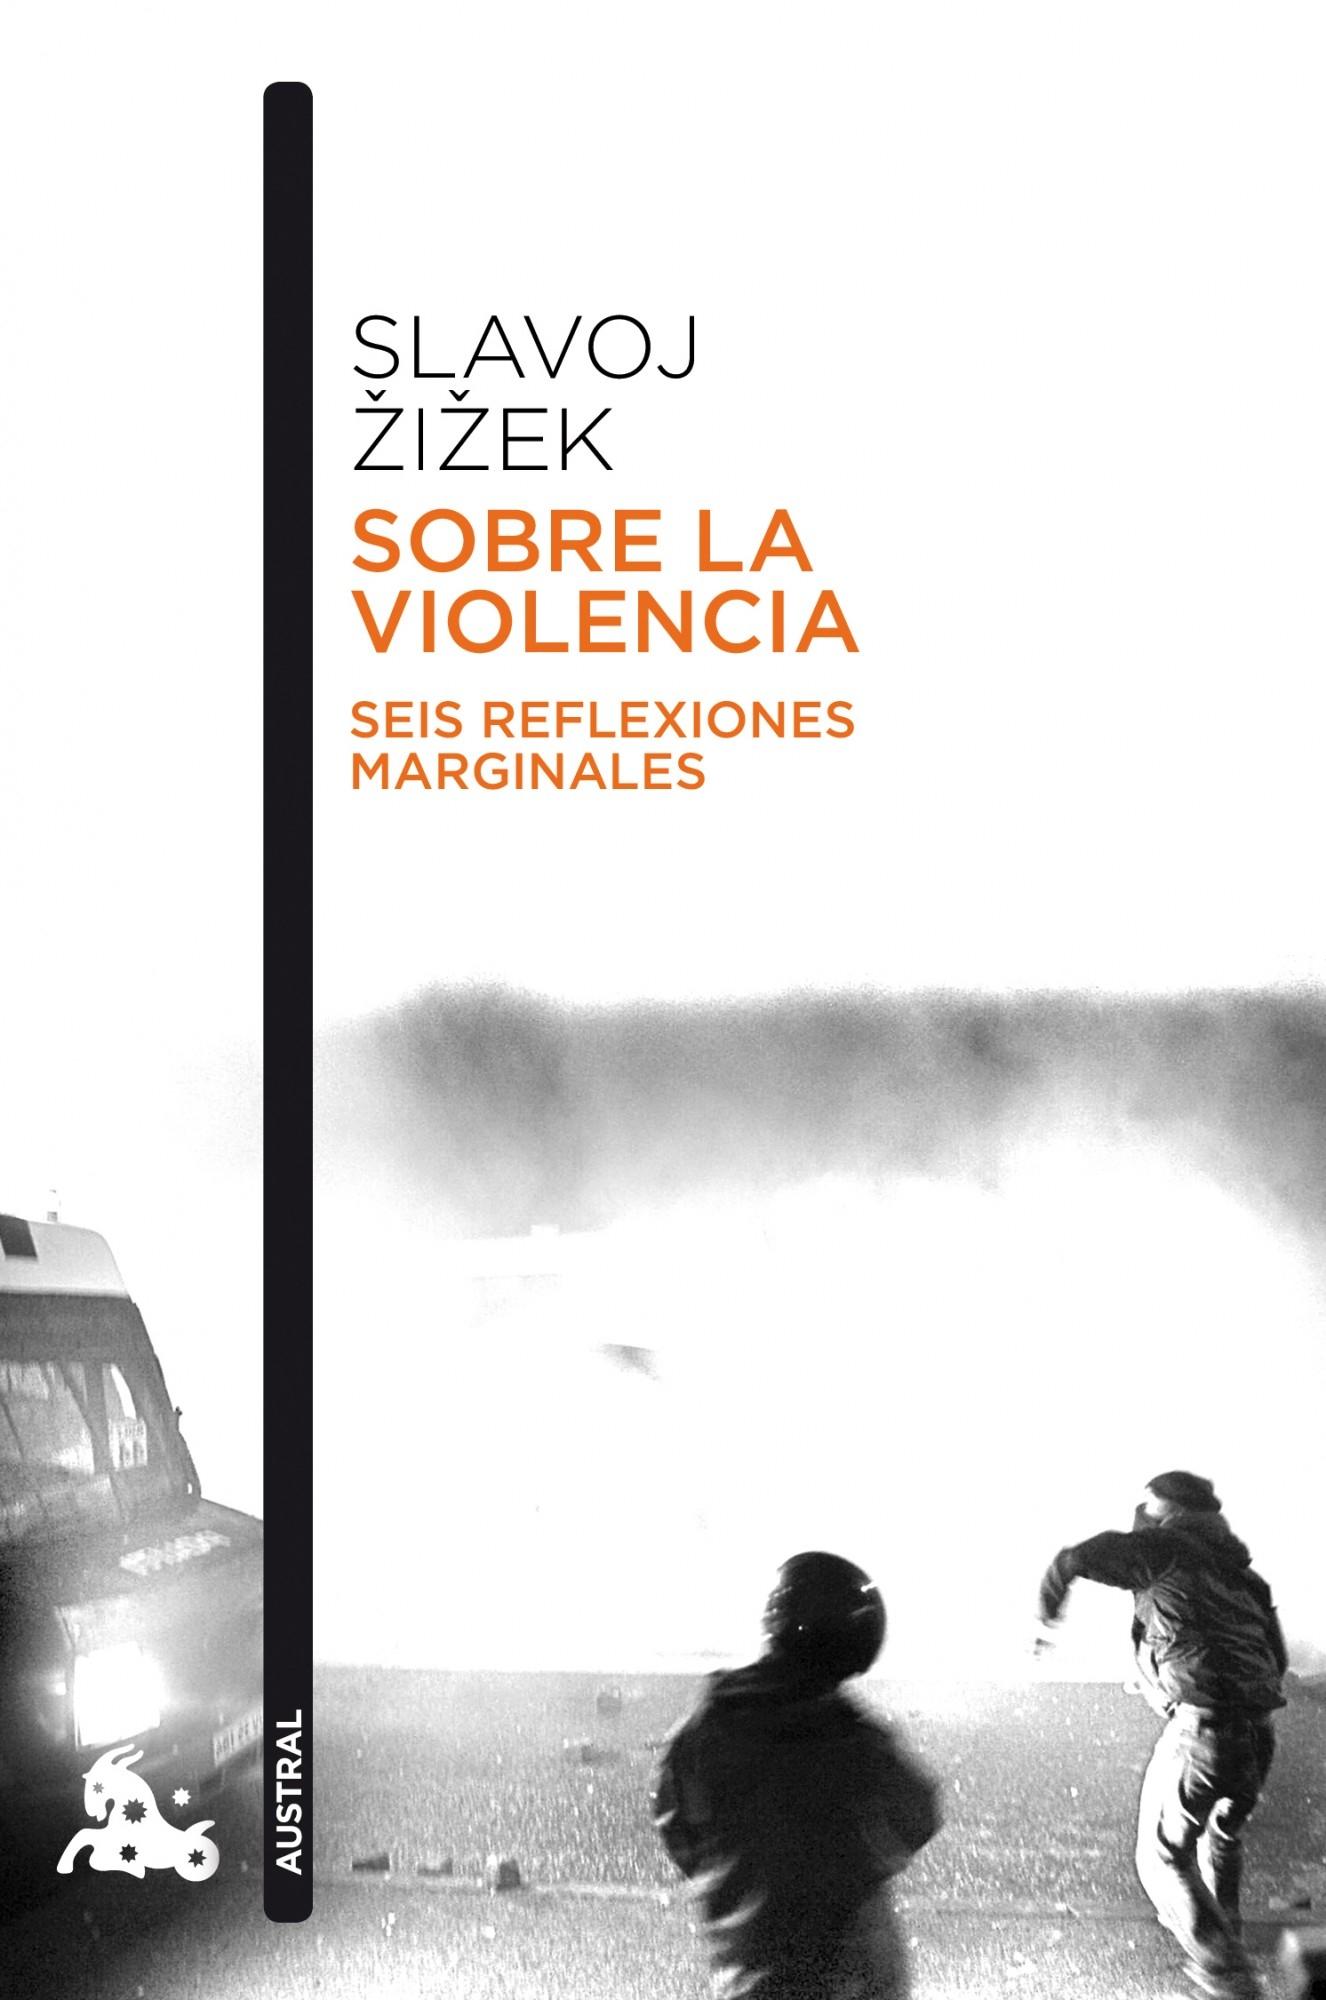 Sobre la violencia "Seis reflexiones marginales"